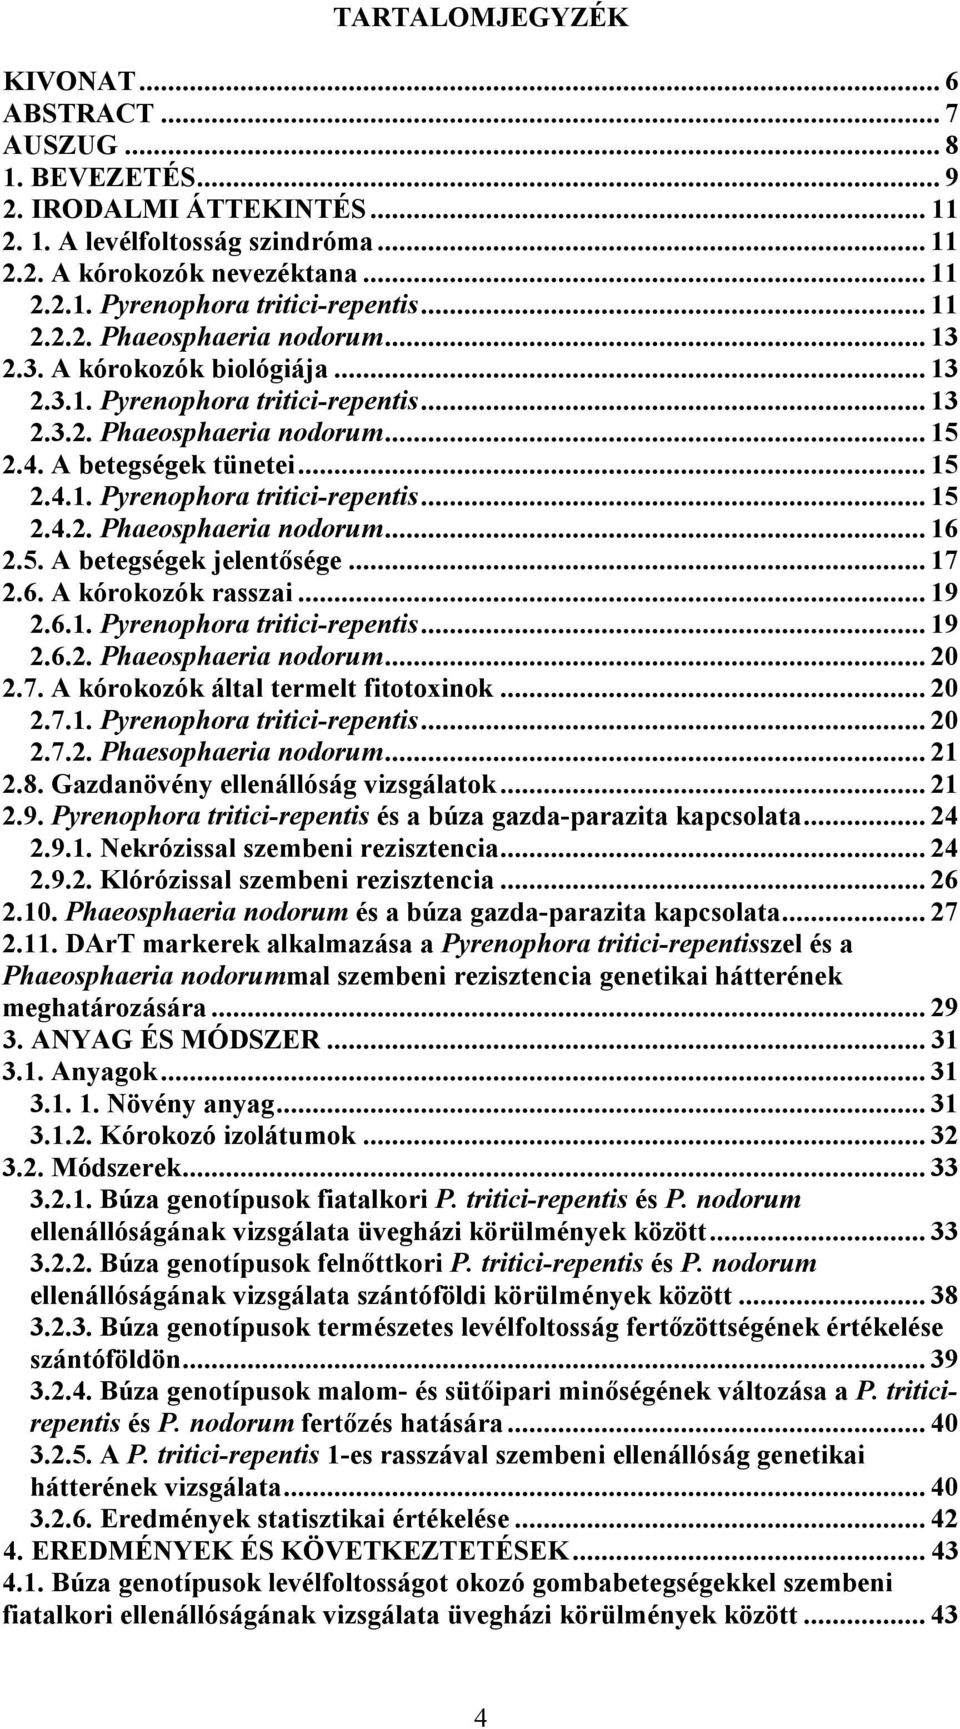 5. A betegségek jelentősége... 17 2.6. A kórokozók rasszai... 19 2.6.1. Pyrenophora tritici-repentis... 19 2.6.2. Phaeosphaeria nodorum... 20 2.7. A kórokozók által termelt fitotoxinok... 20 2.7.1. Pyrenophora tritici-repentis... 20 2.7.2. Phaesophaeria nodorum.